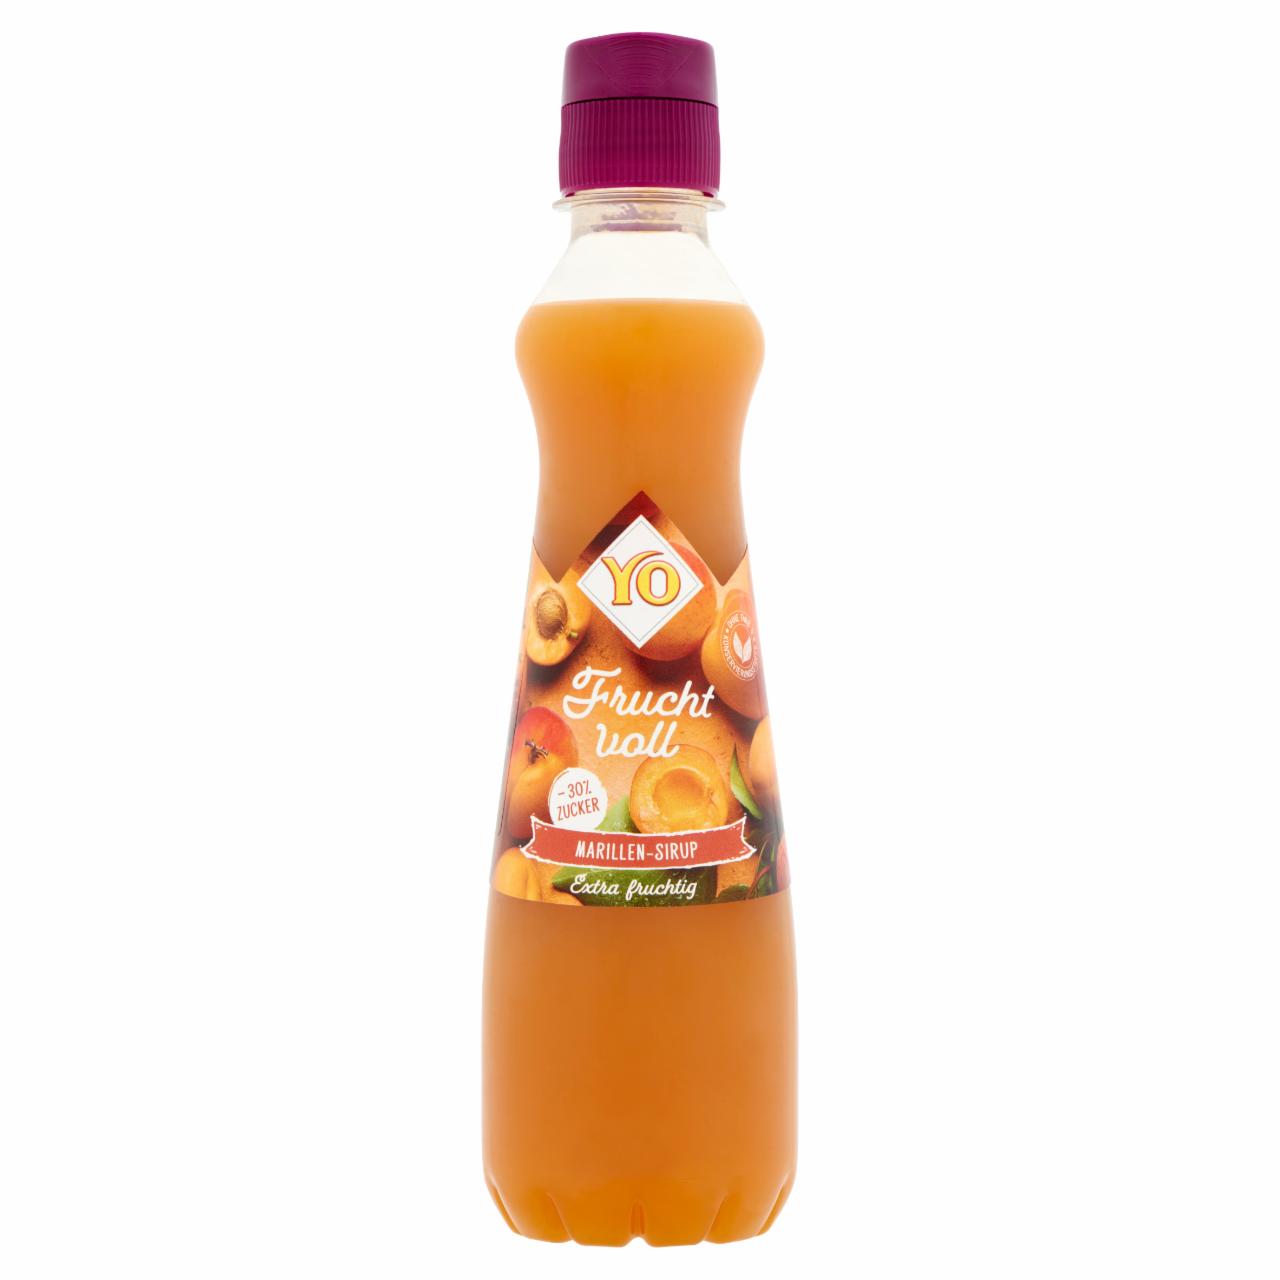 Képek - Yo csökkentett energiatartalmú sárgabarack-narancs gyümölcsszörp 0,35 l